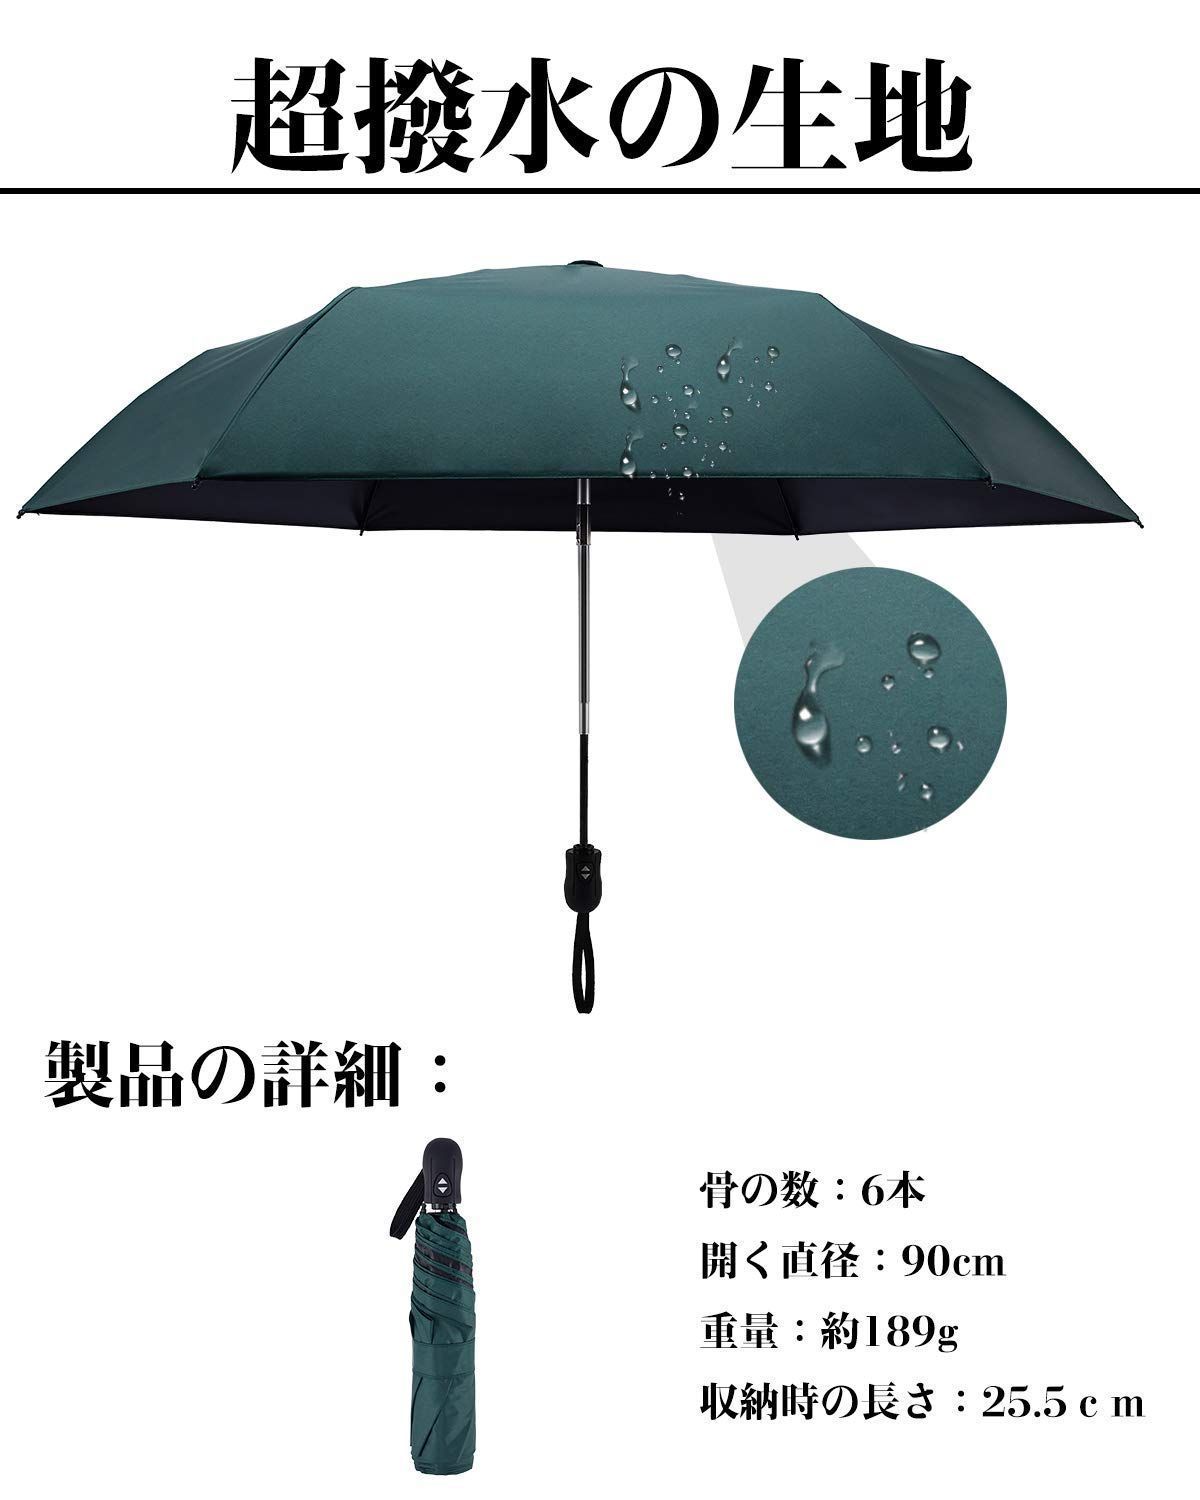 【色: ホワイト】日傘 超軽量 189g-199g UVカット率 100% 完全